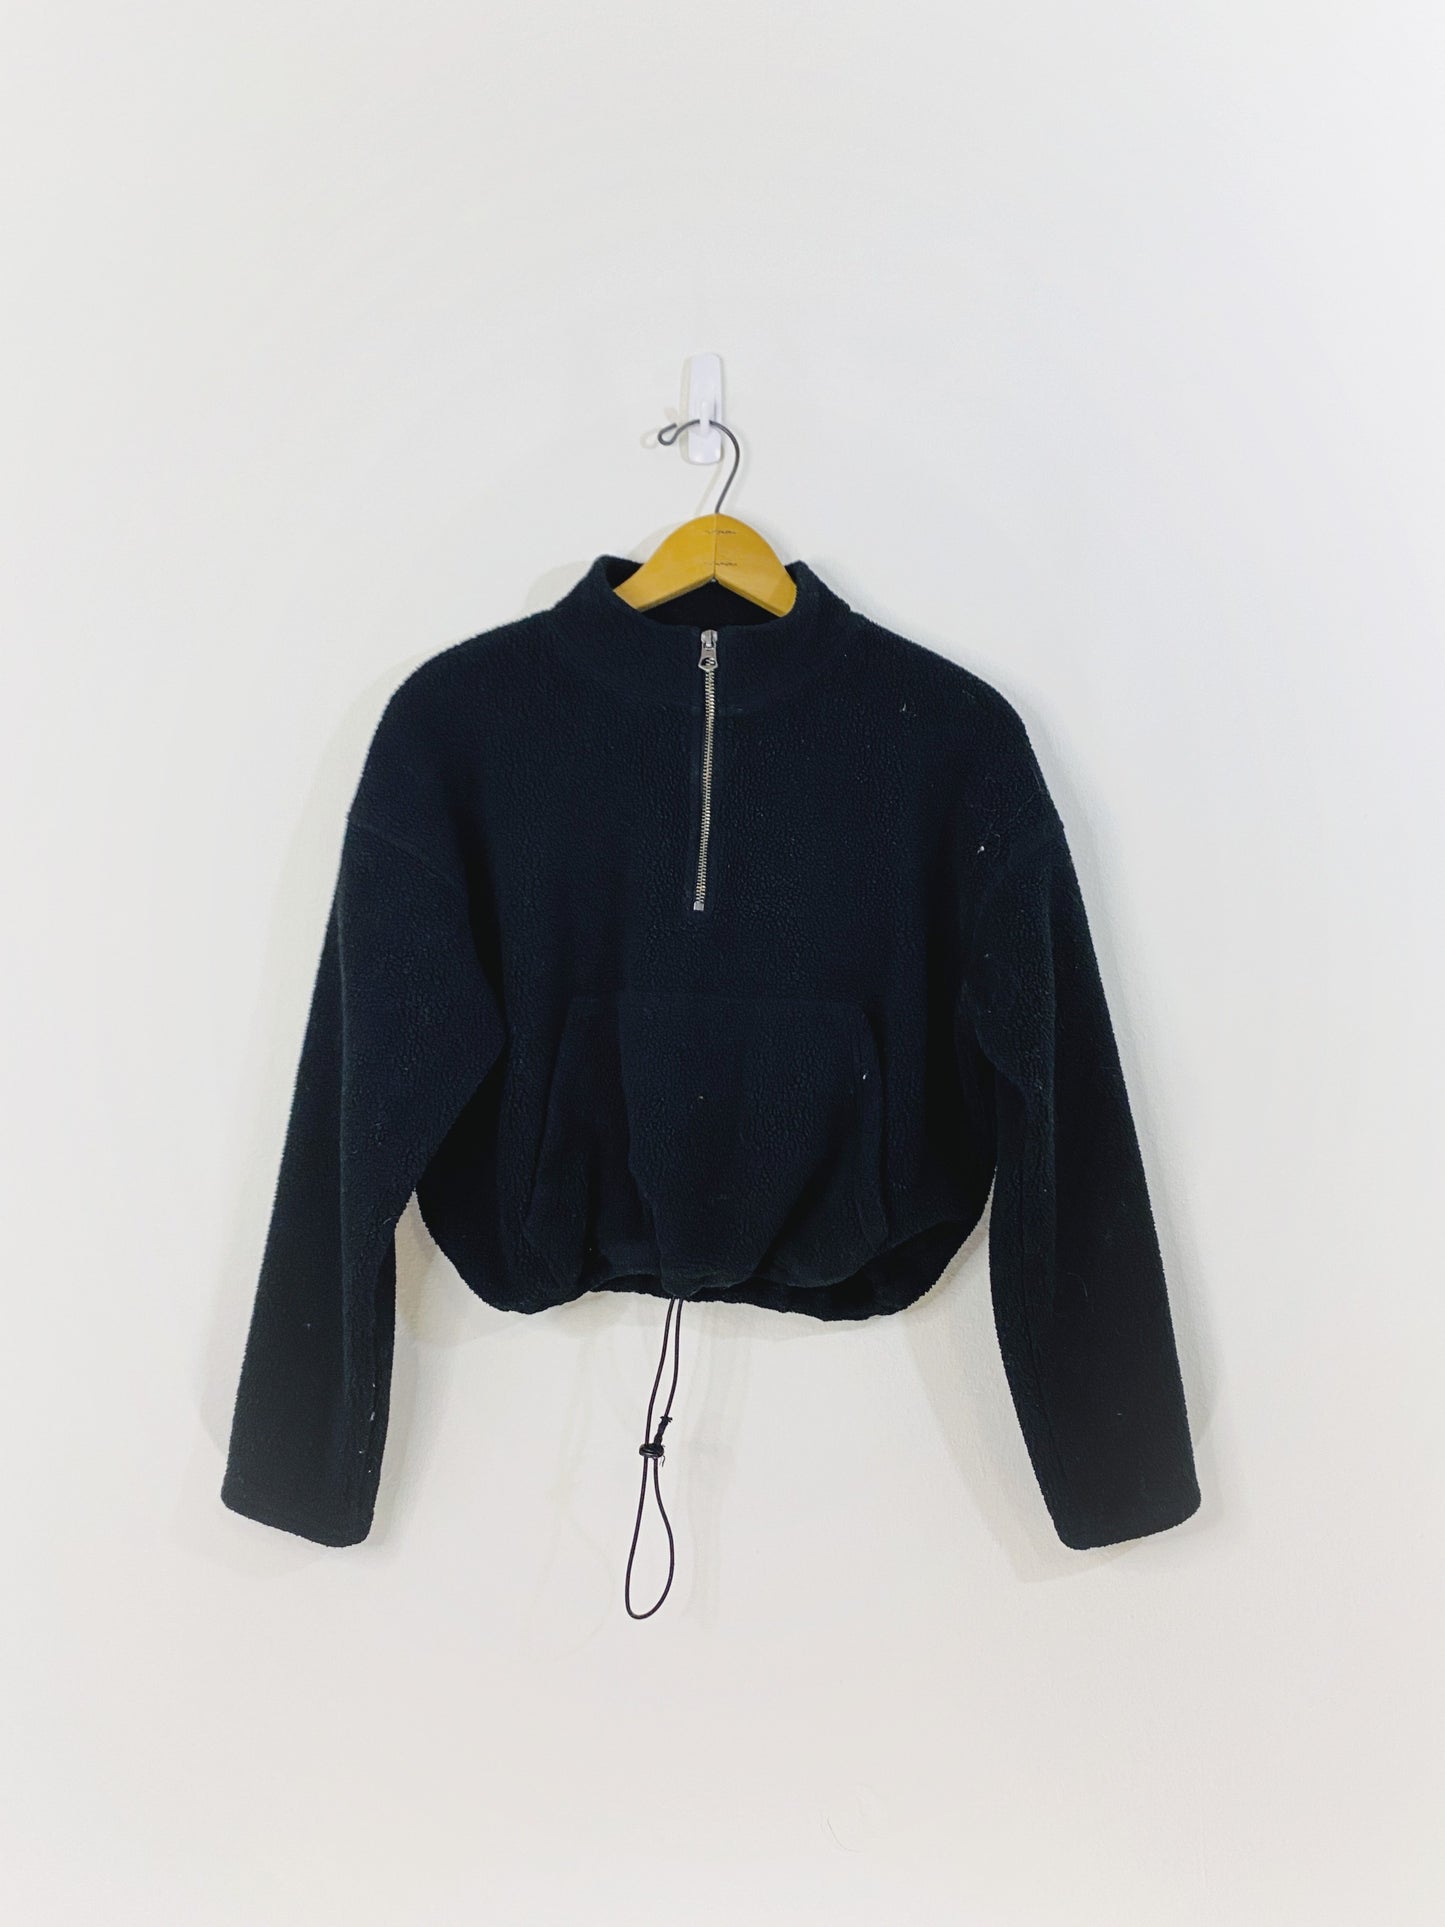 Cropped Black Fleece Sweater (XS)